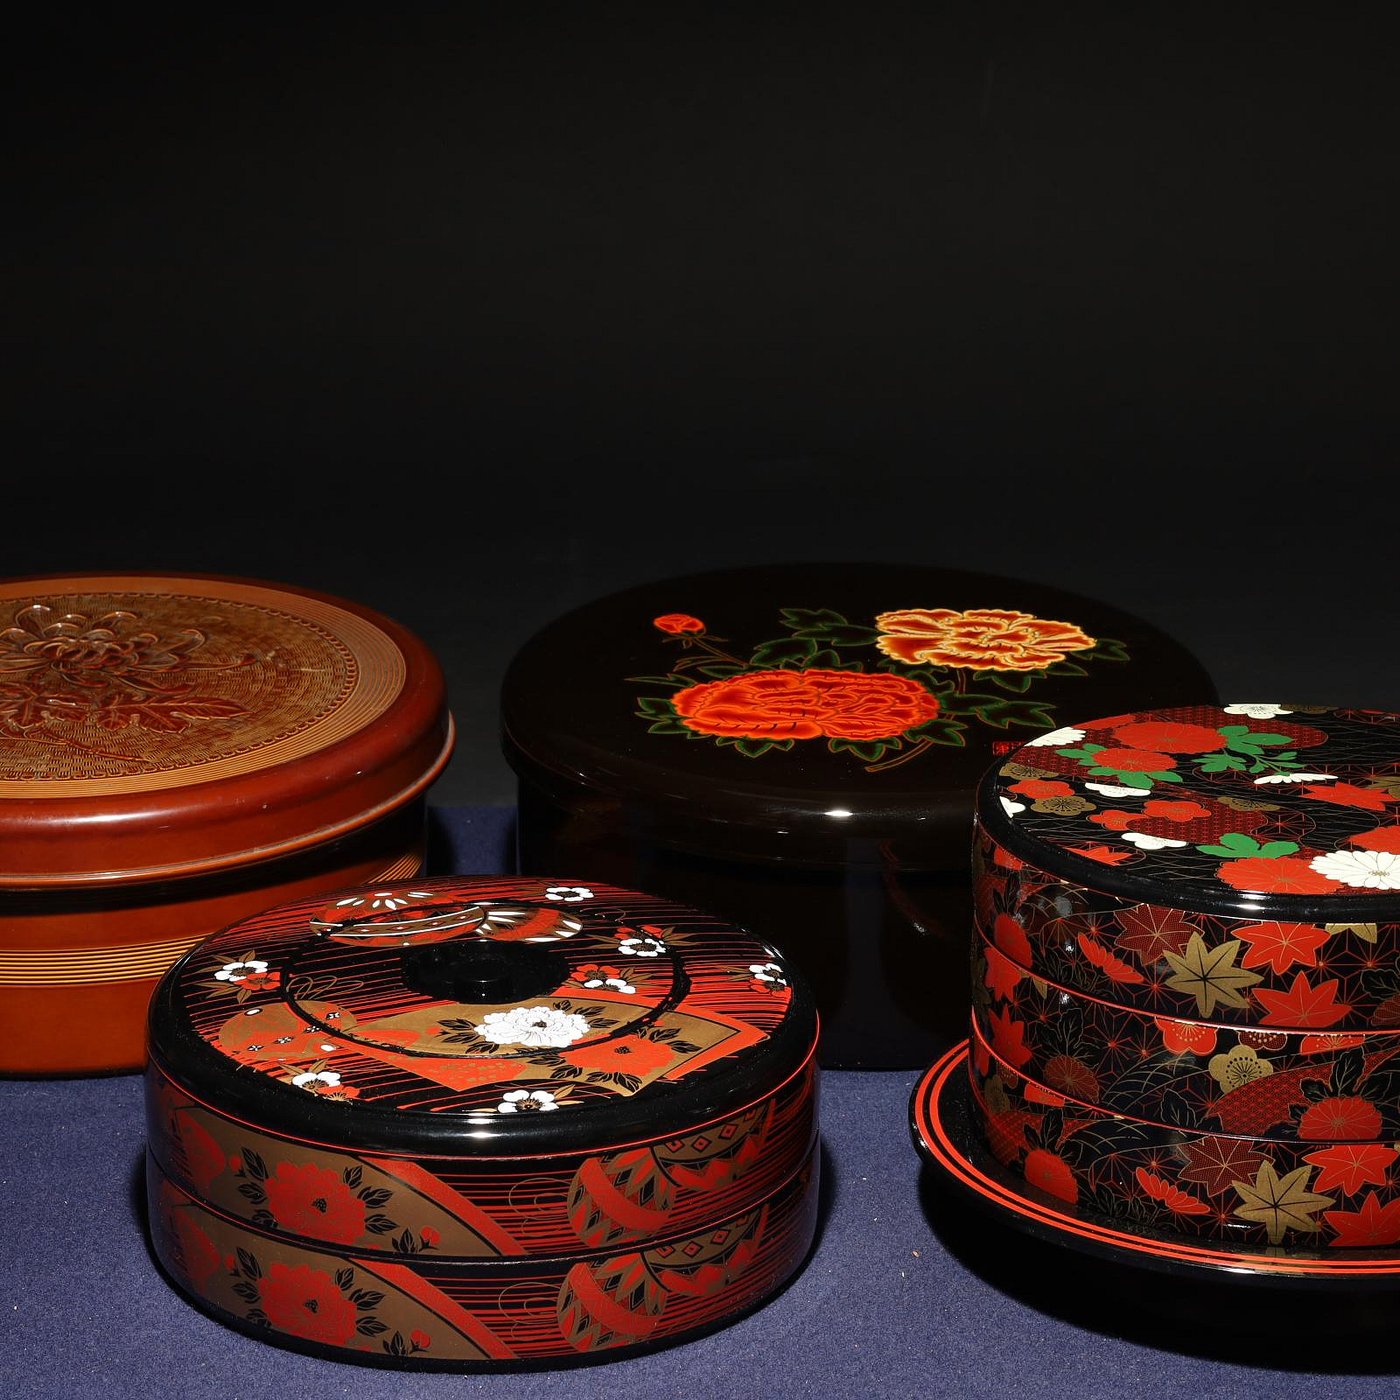 3/10結標日本高級漆器重箱茶餅盒茶櫃四件D030043 -漆碗漆盤漆盒茶箱 